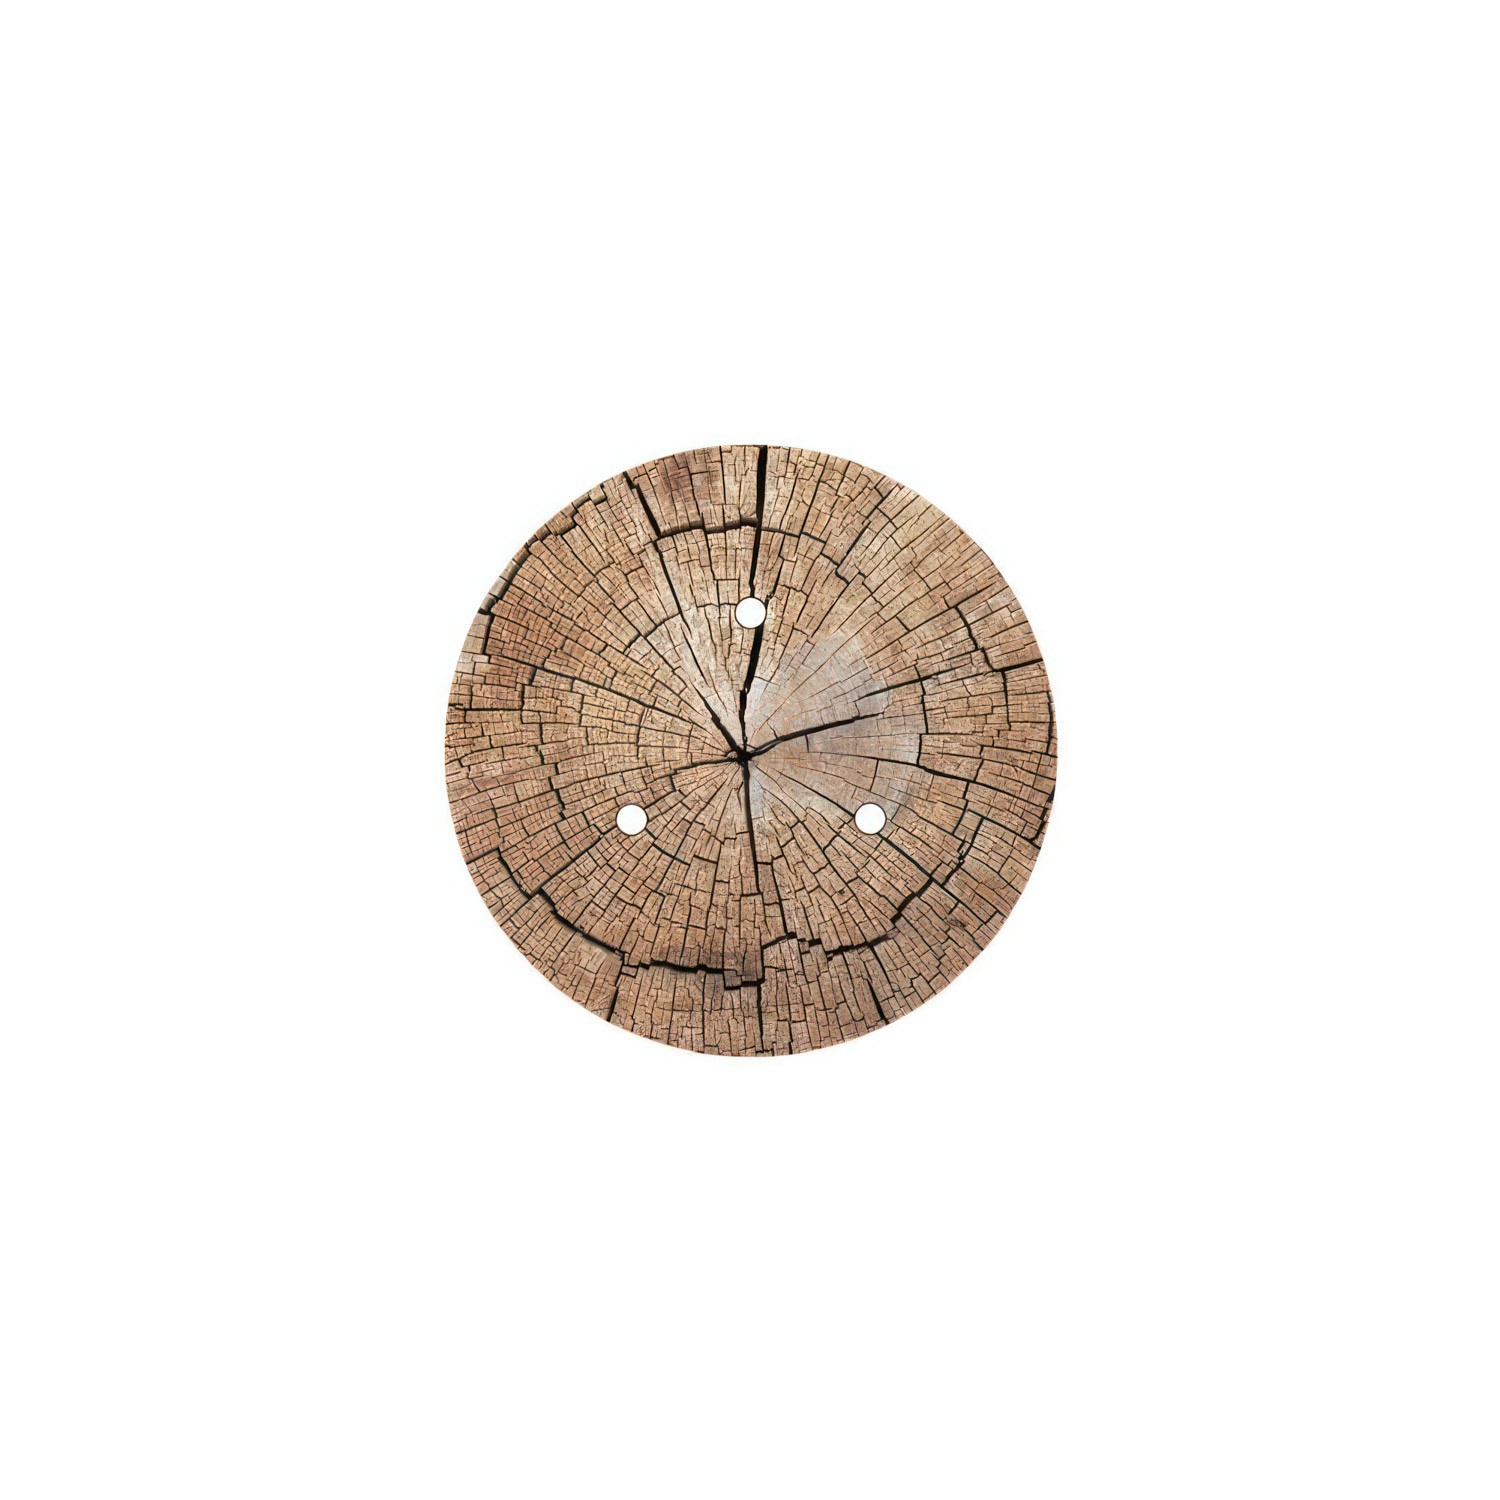 Rundes 3-Loch und 4 Seitenlöchern Lampenbaldachin, Rose-One-Abdeckung, 200 mm Durchmesser - PROMO